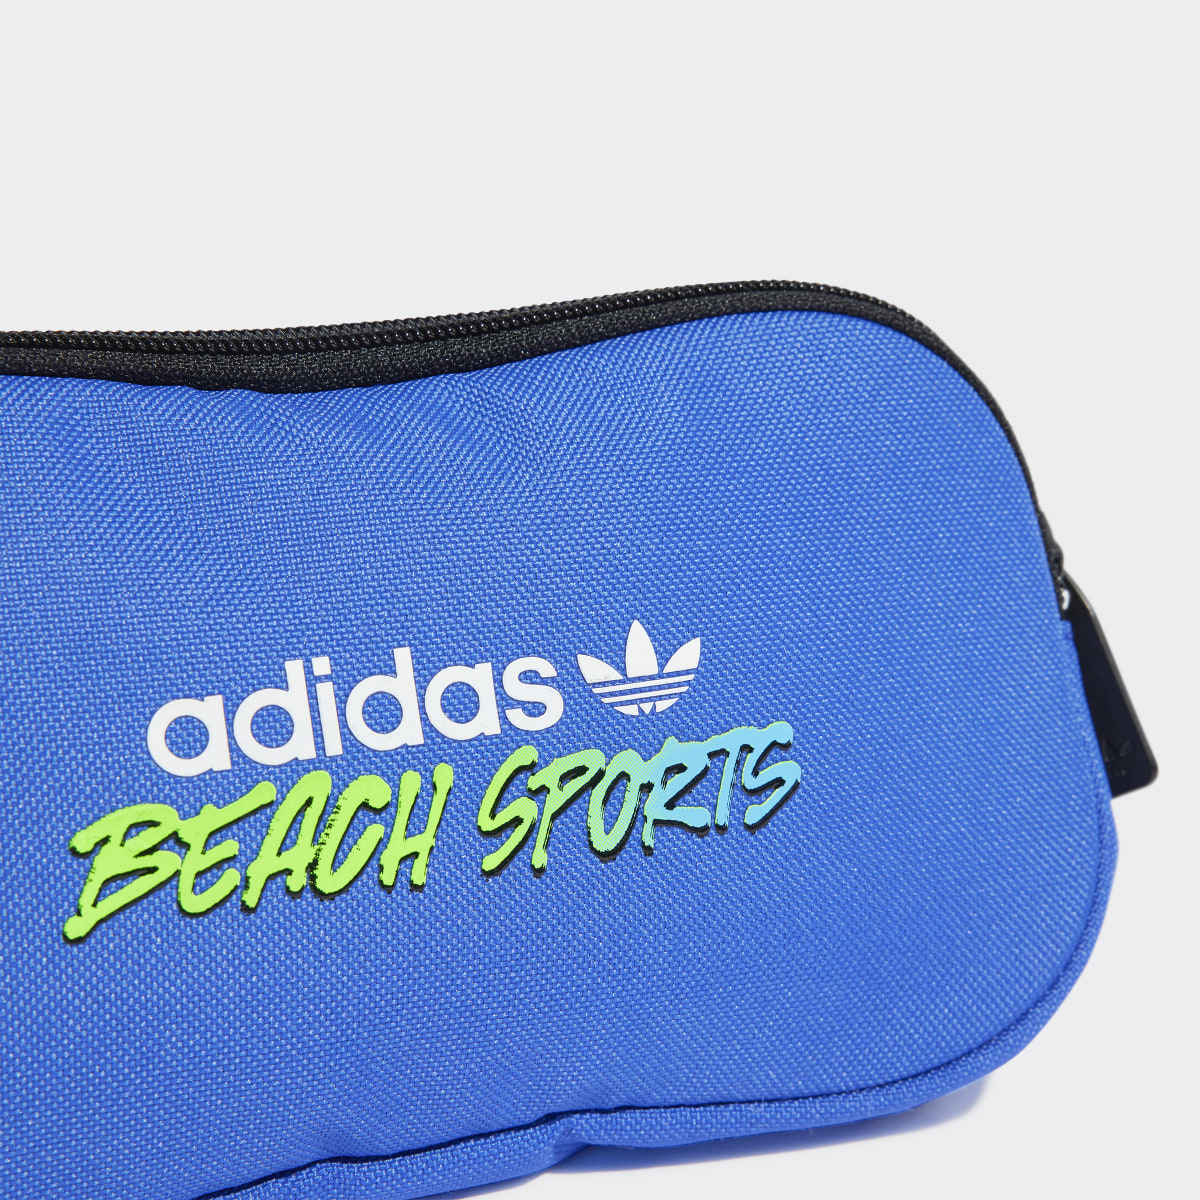 Adidas Beach Sports Bauchtasche. 6